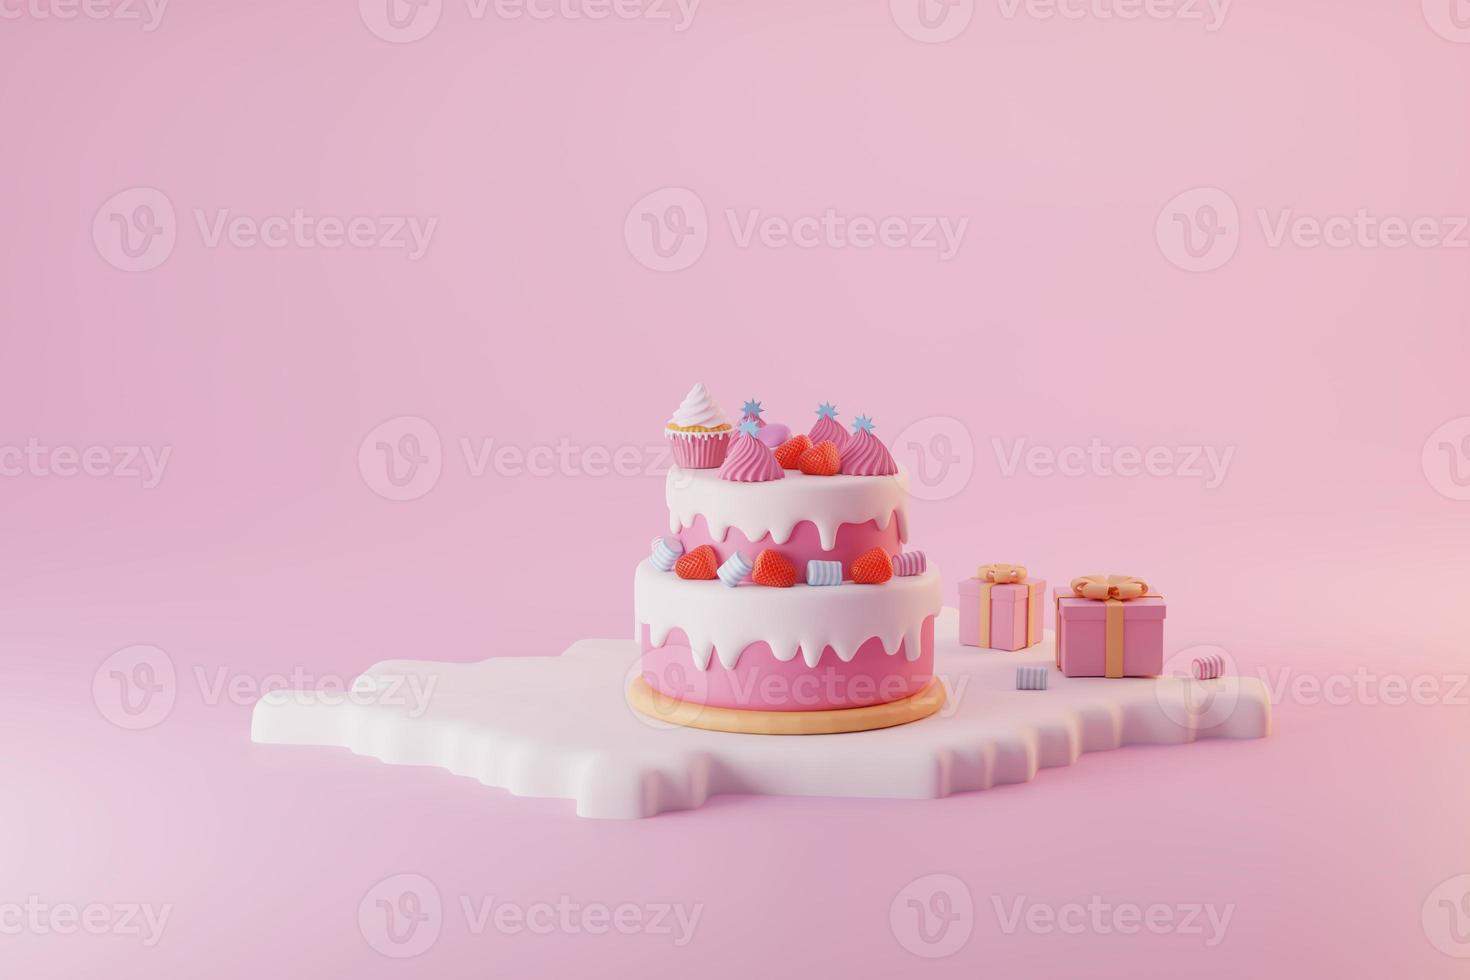 gâteau rose minimal et glaçage blanc avec fraise rouge, garniture de guimauve dans la boîte carte de voeux pour la saint valentin et la célébration photo